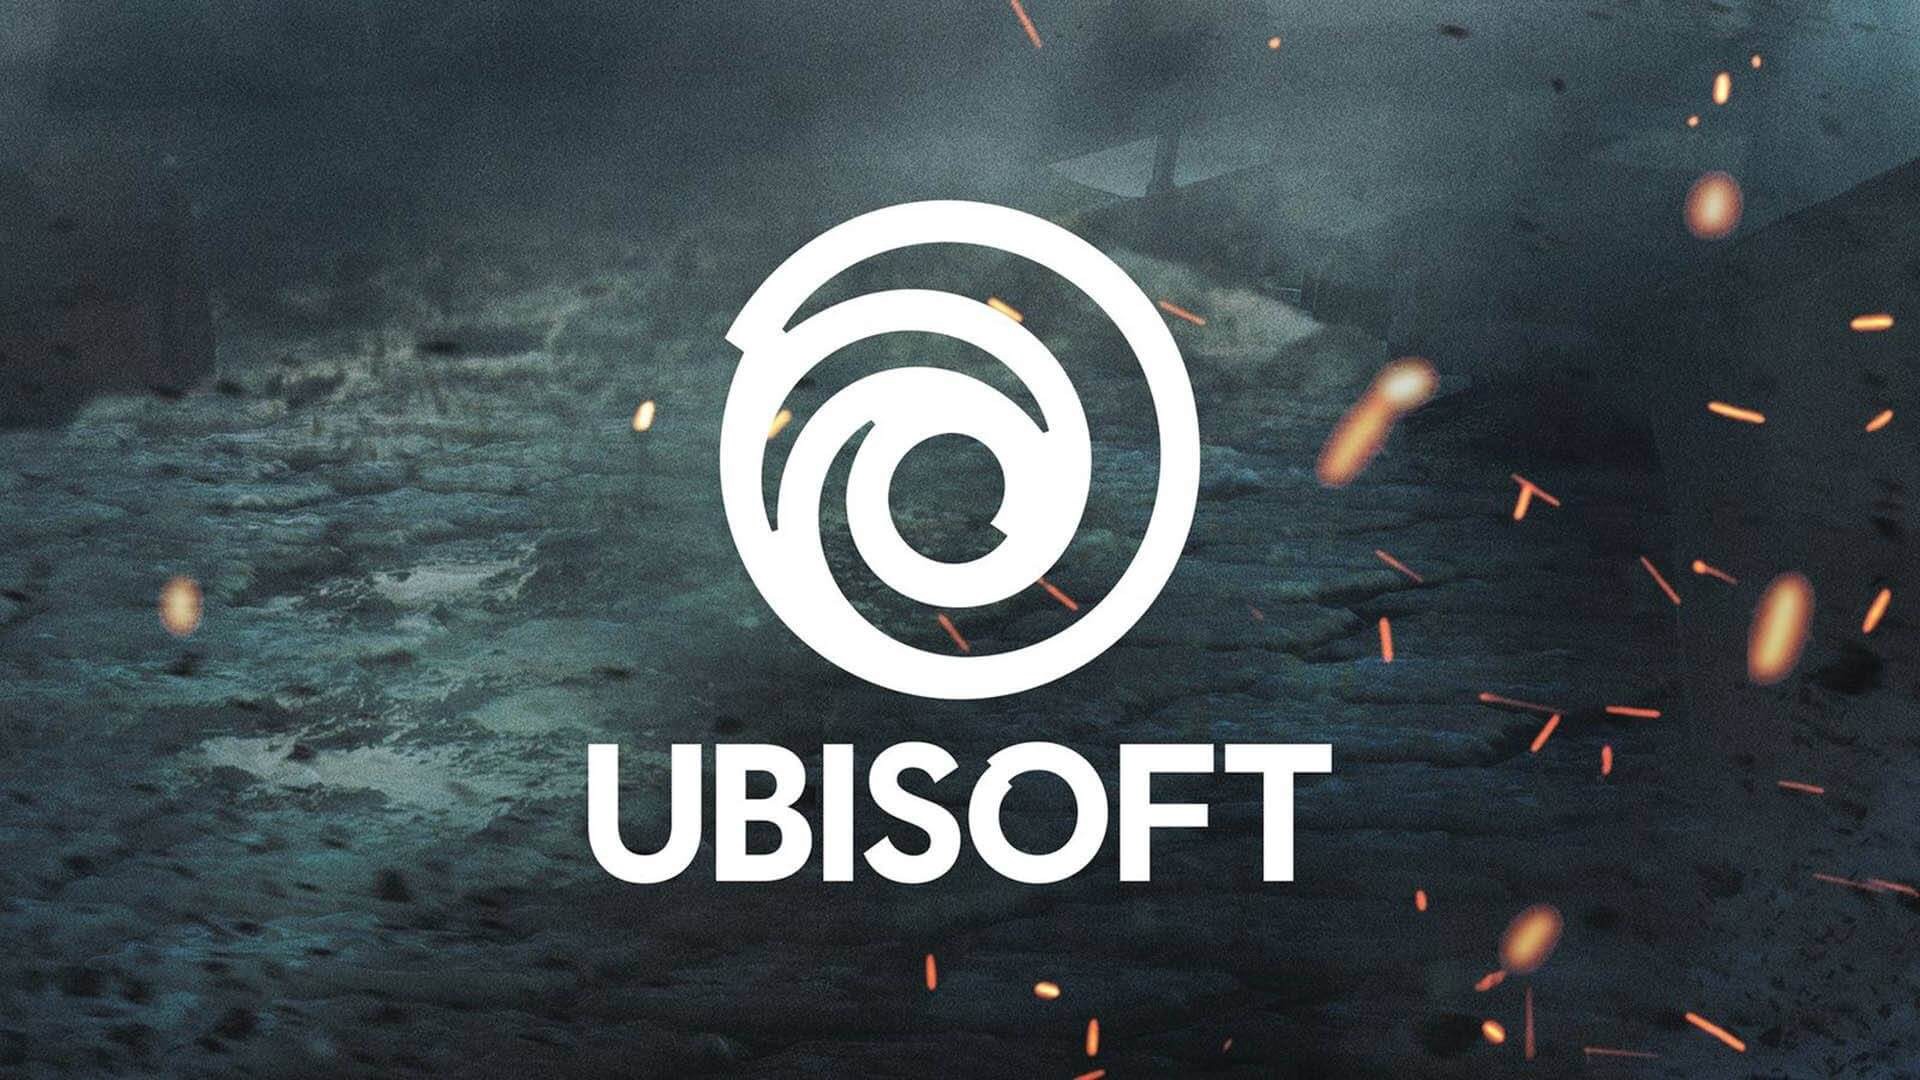 Ubisoft anuncia que Virginie Haas, actualmente miembro de la Junta Directiva de la Compañía, será nombrada como Directora Ejecutiva